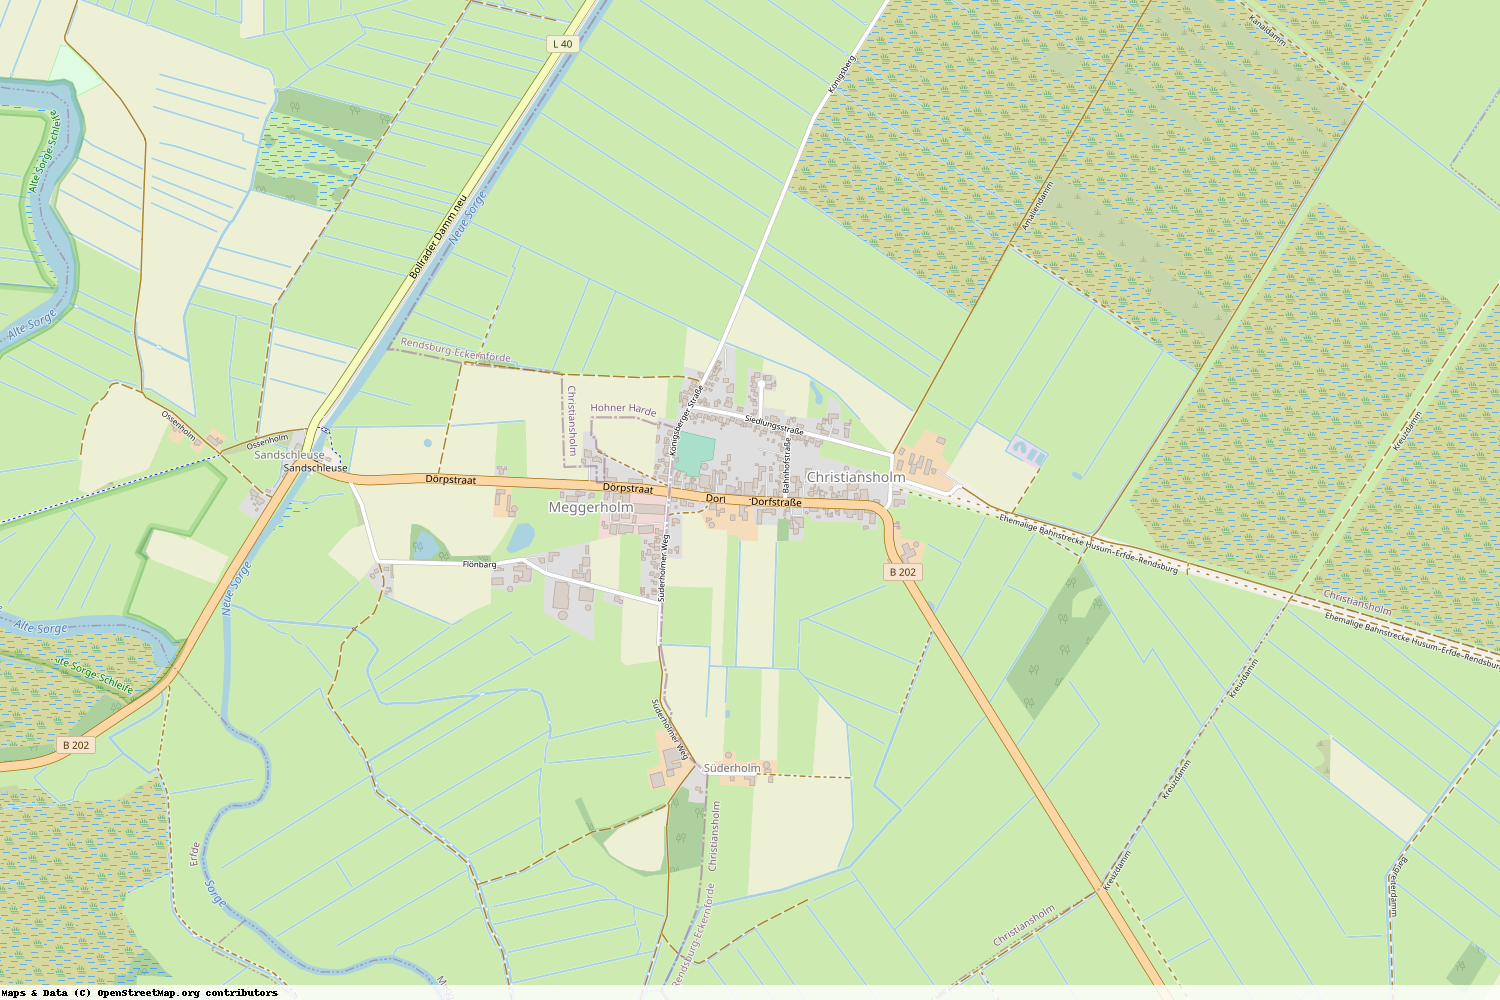 Ist gerade Stromausfall in Schleswig-Holstein - Rendsburg-Eckernförde - Christiansholm?